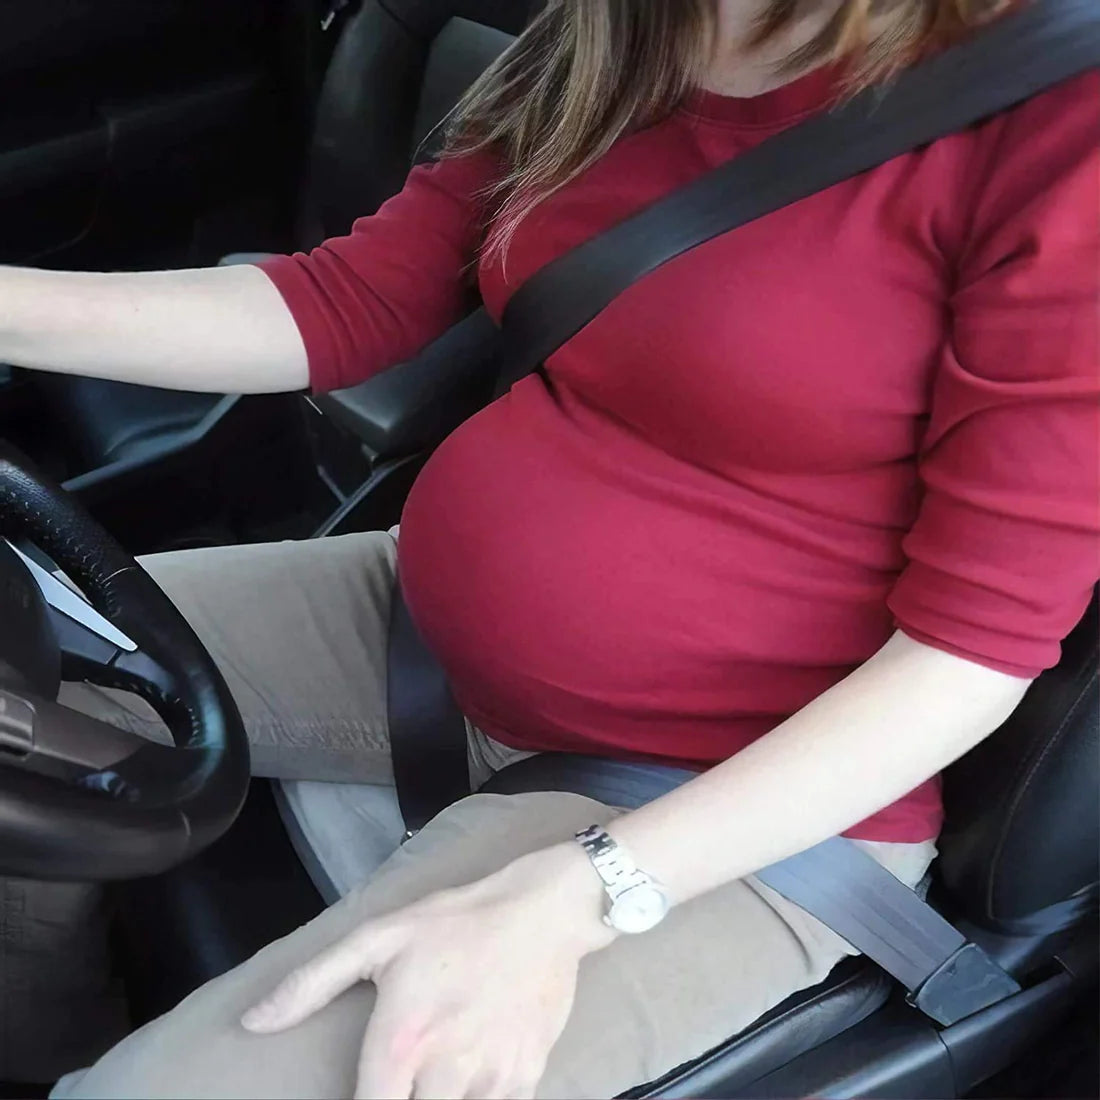 Les ceinture de sécurité de grossesse seraient une